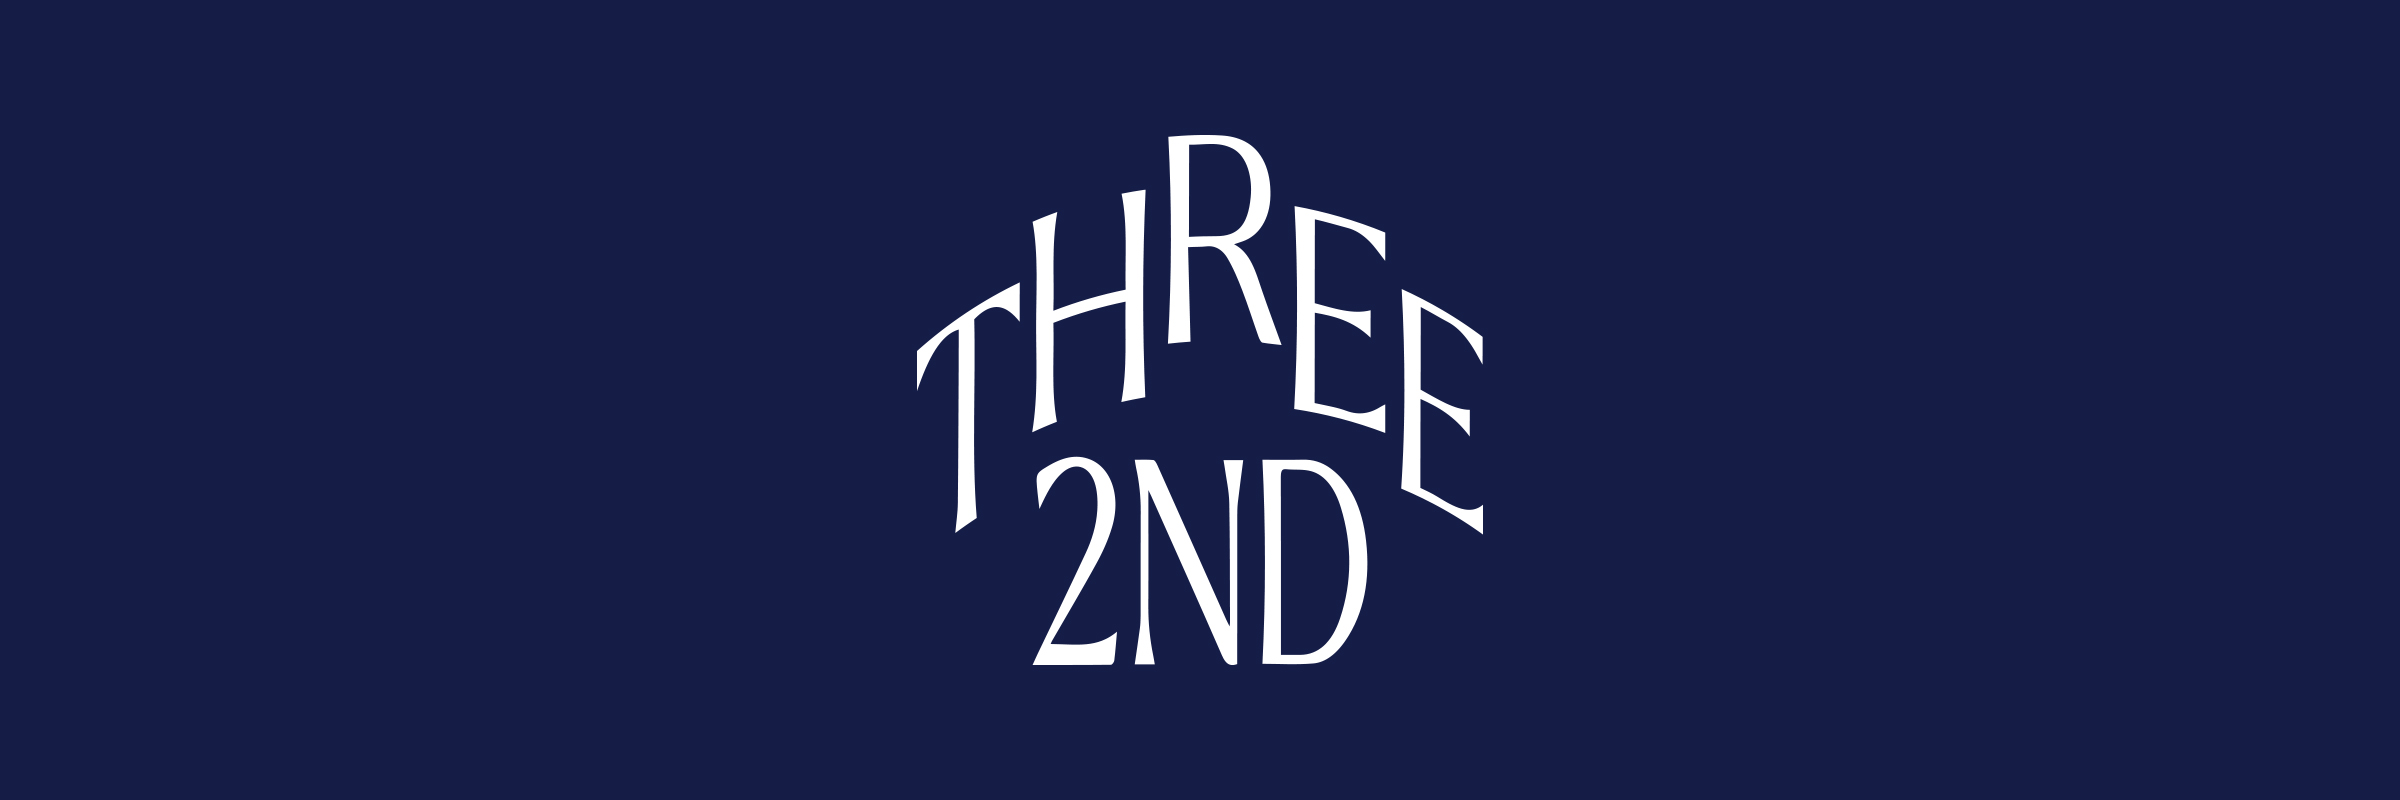 Three2nd